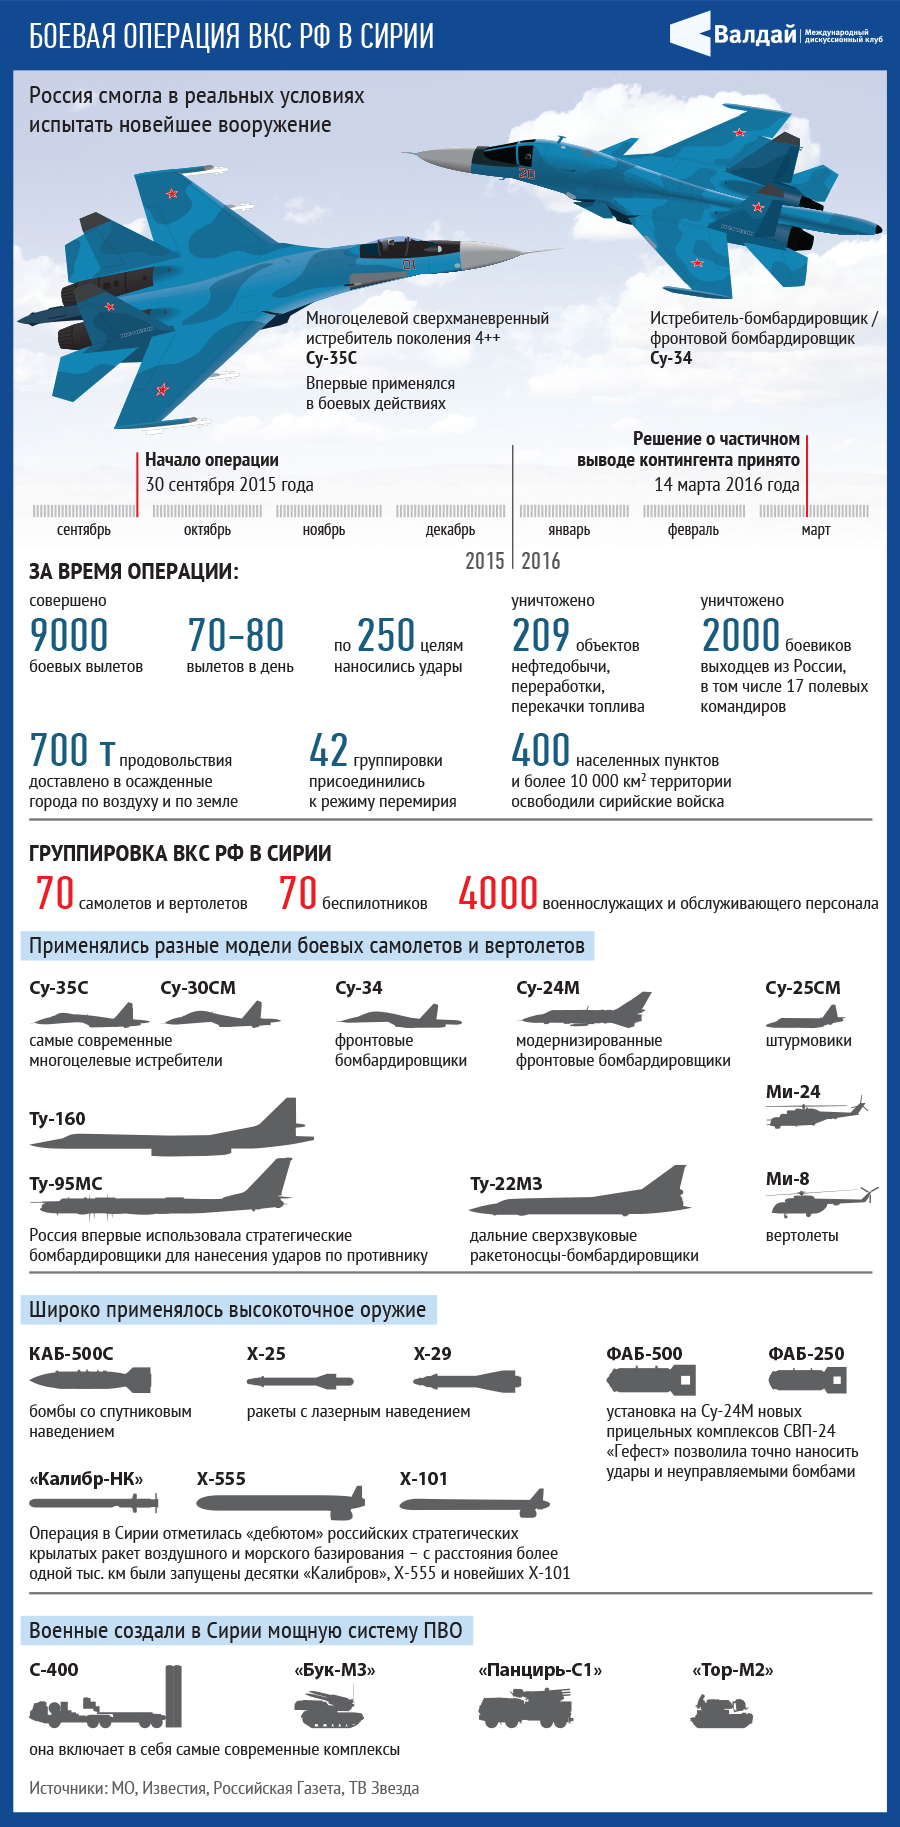 Количество самолетов в полку